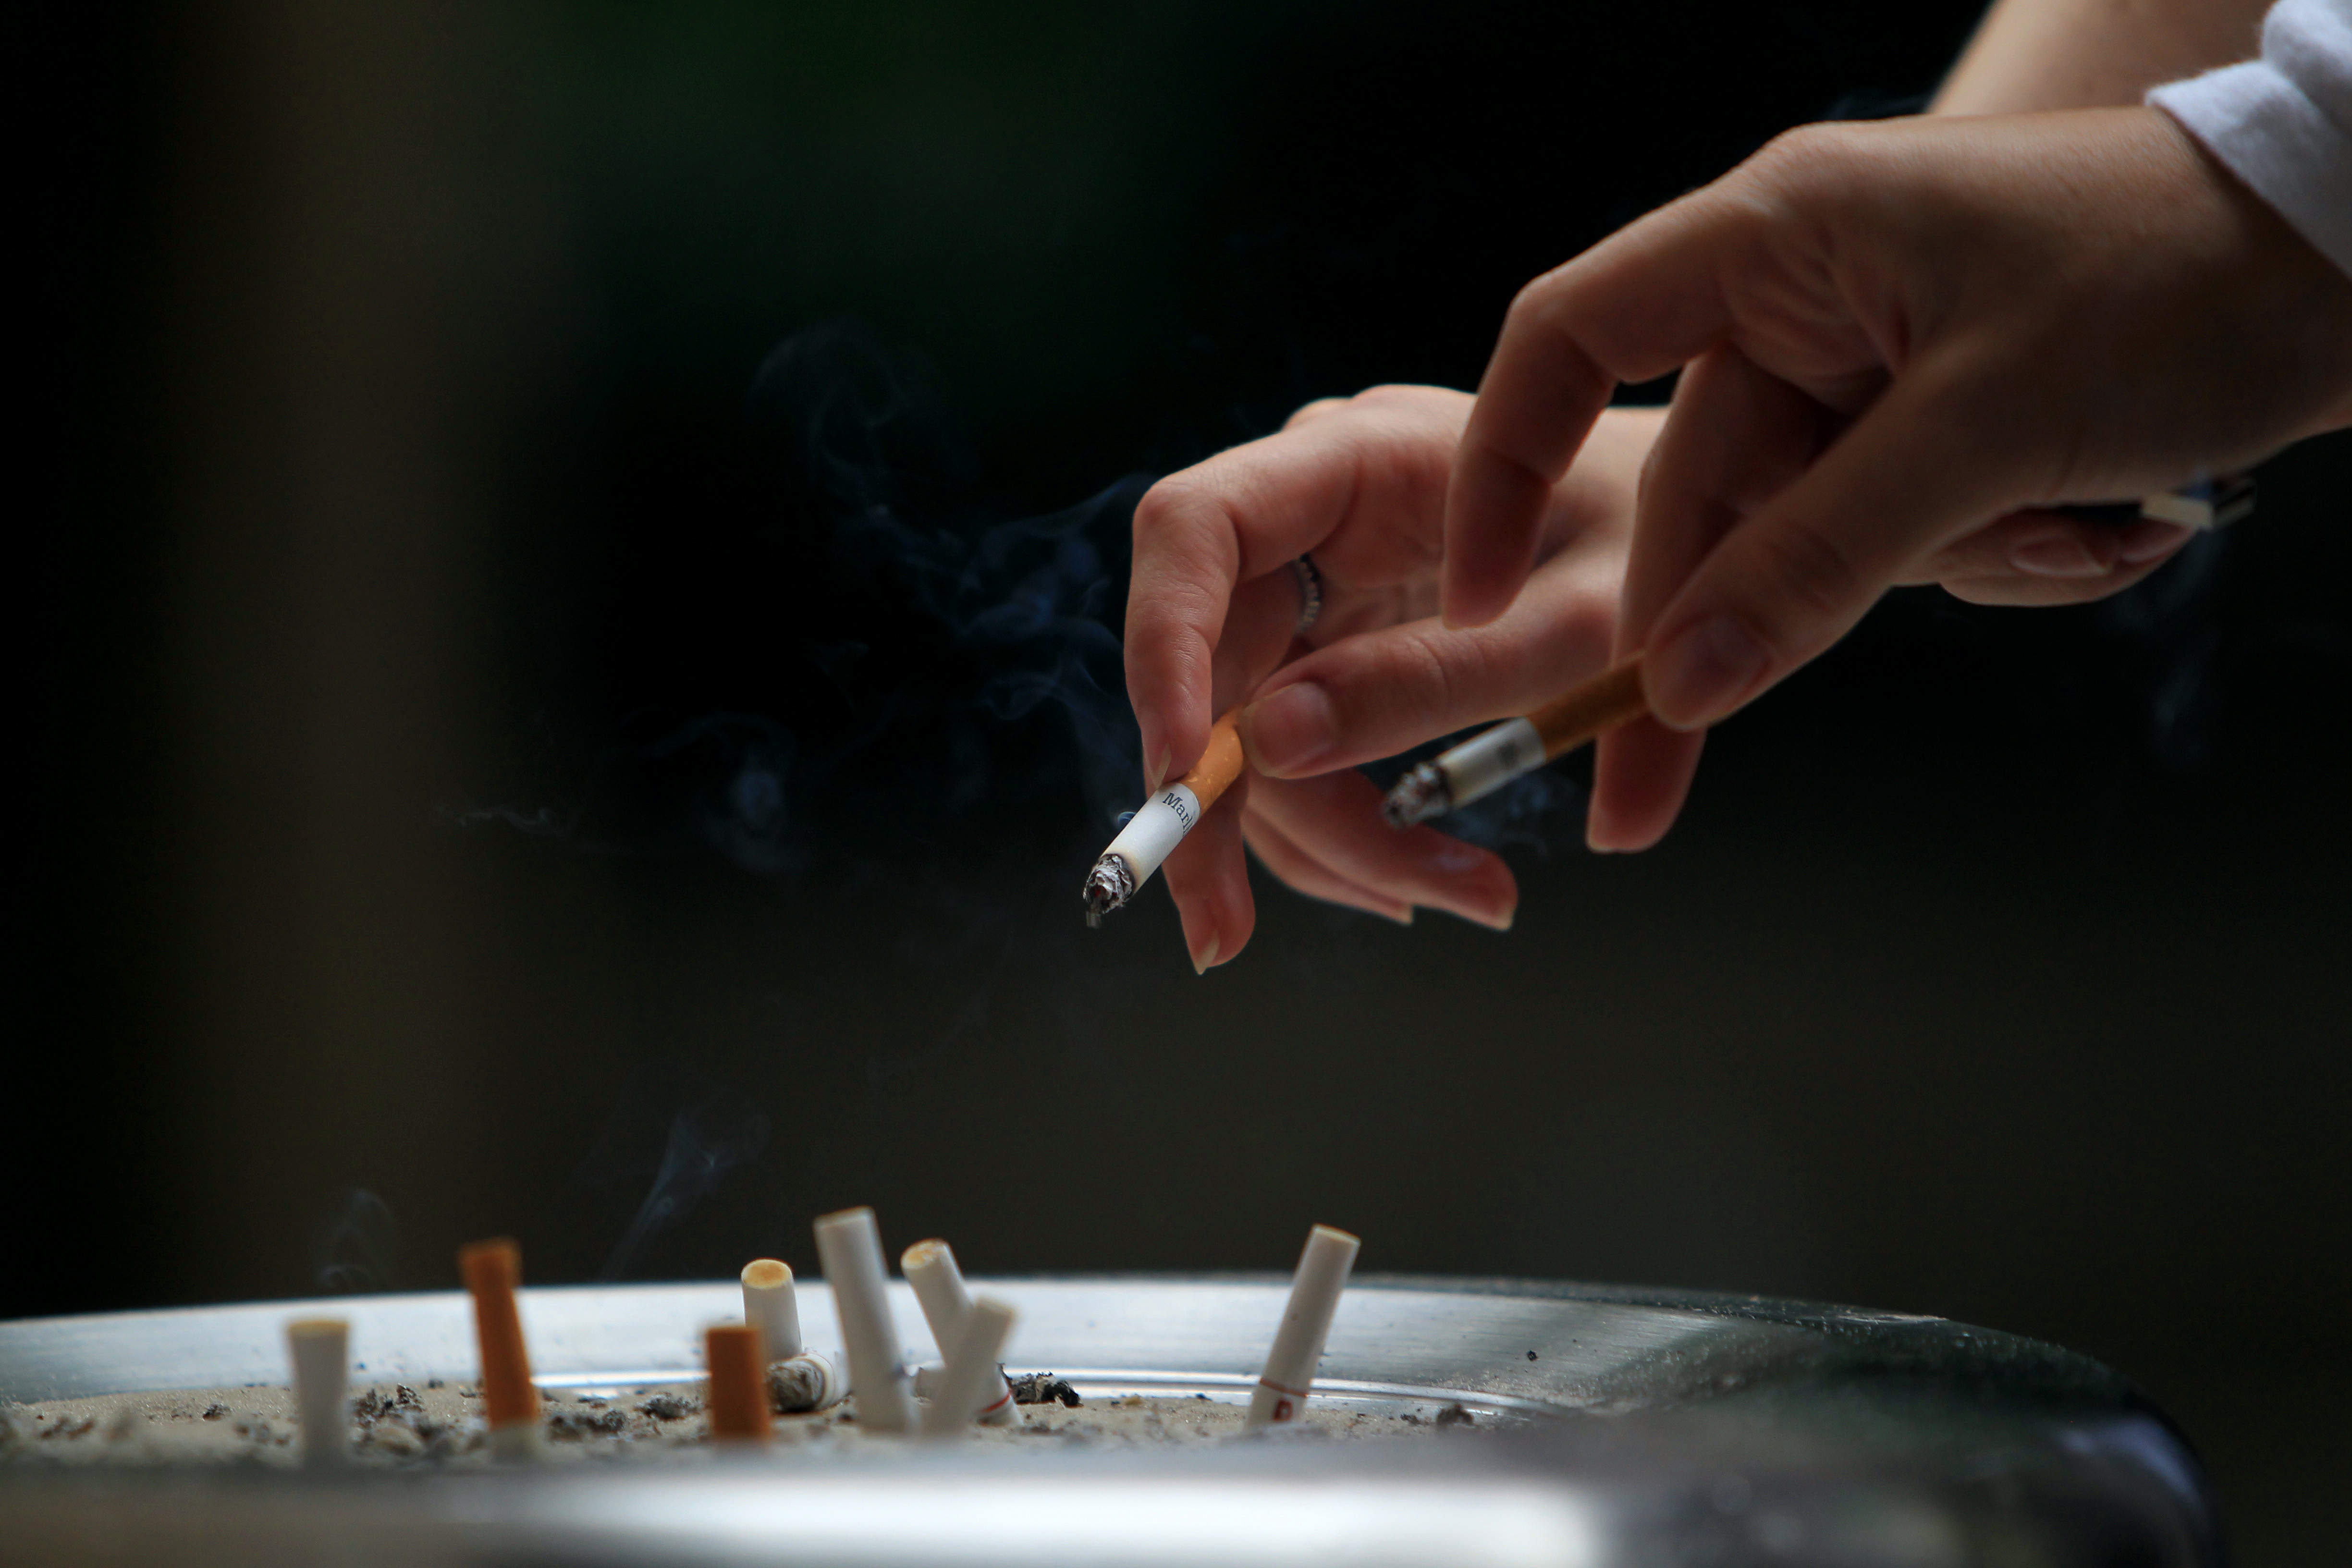 Médicos británicos contemplan prohibir el tabaco para los nacidos después del 2000